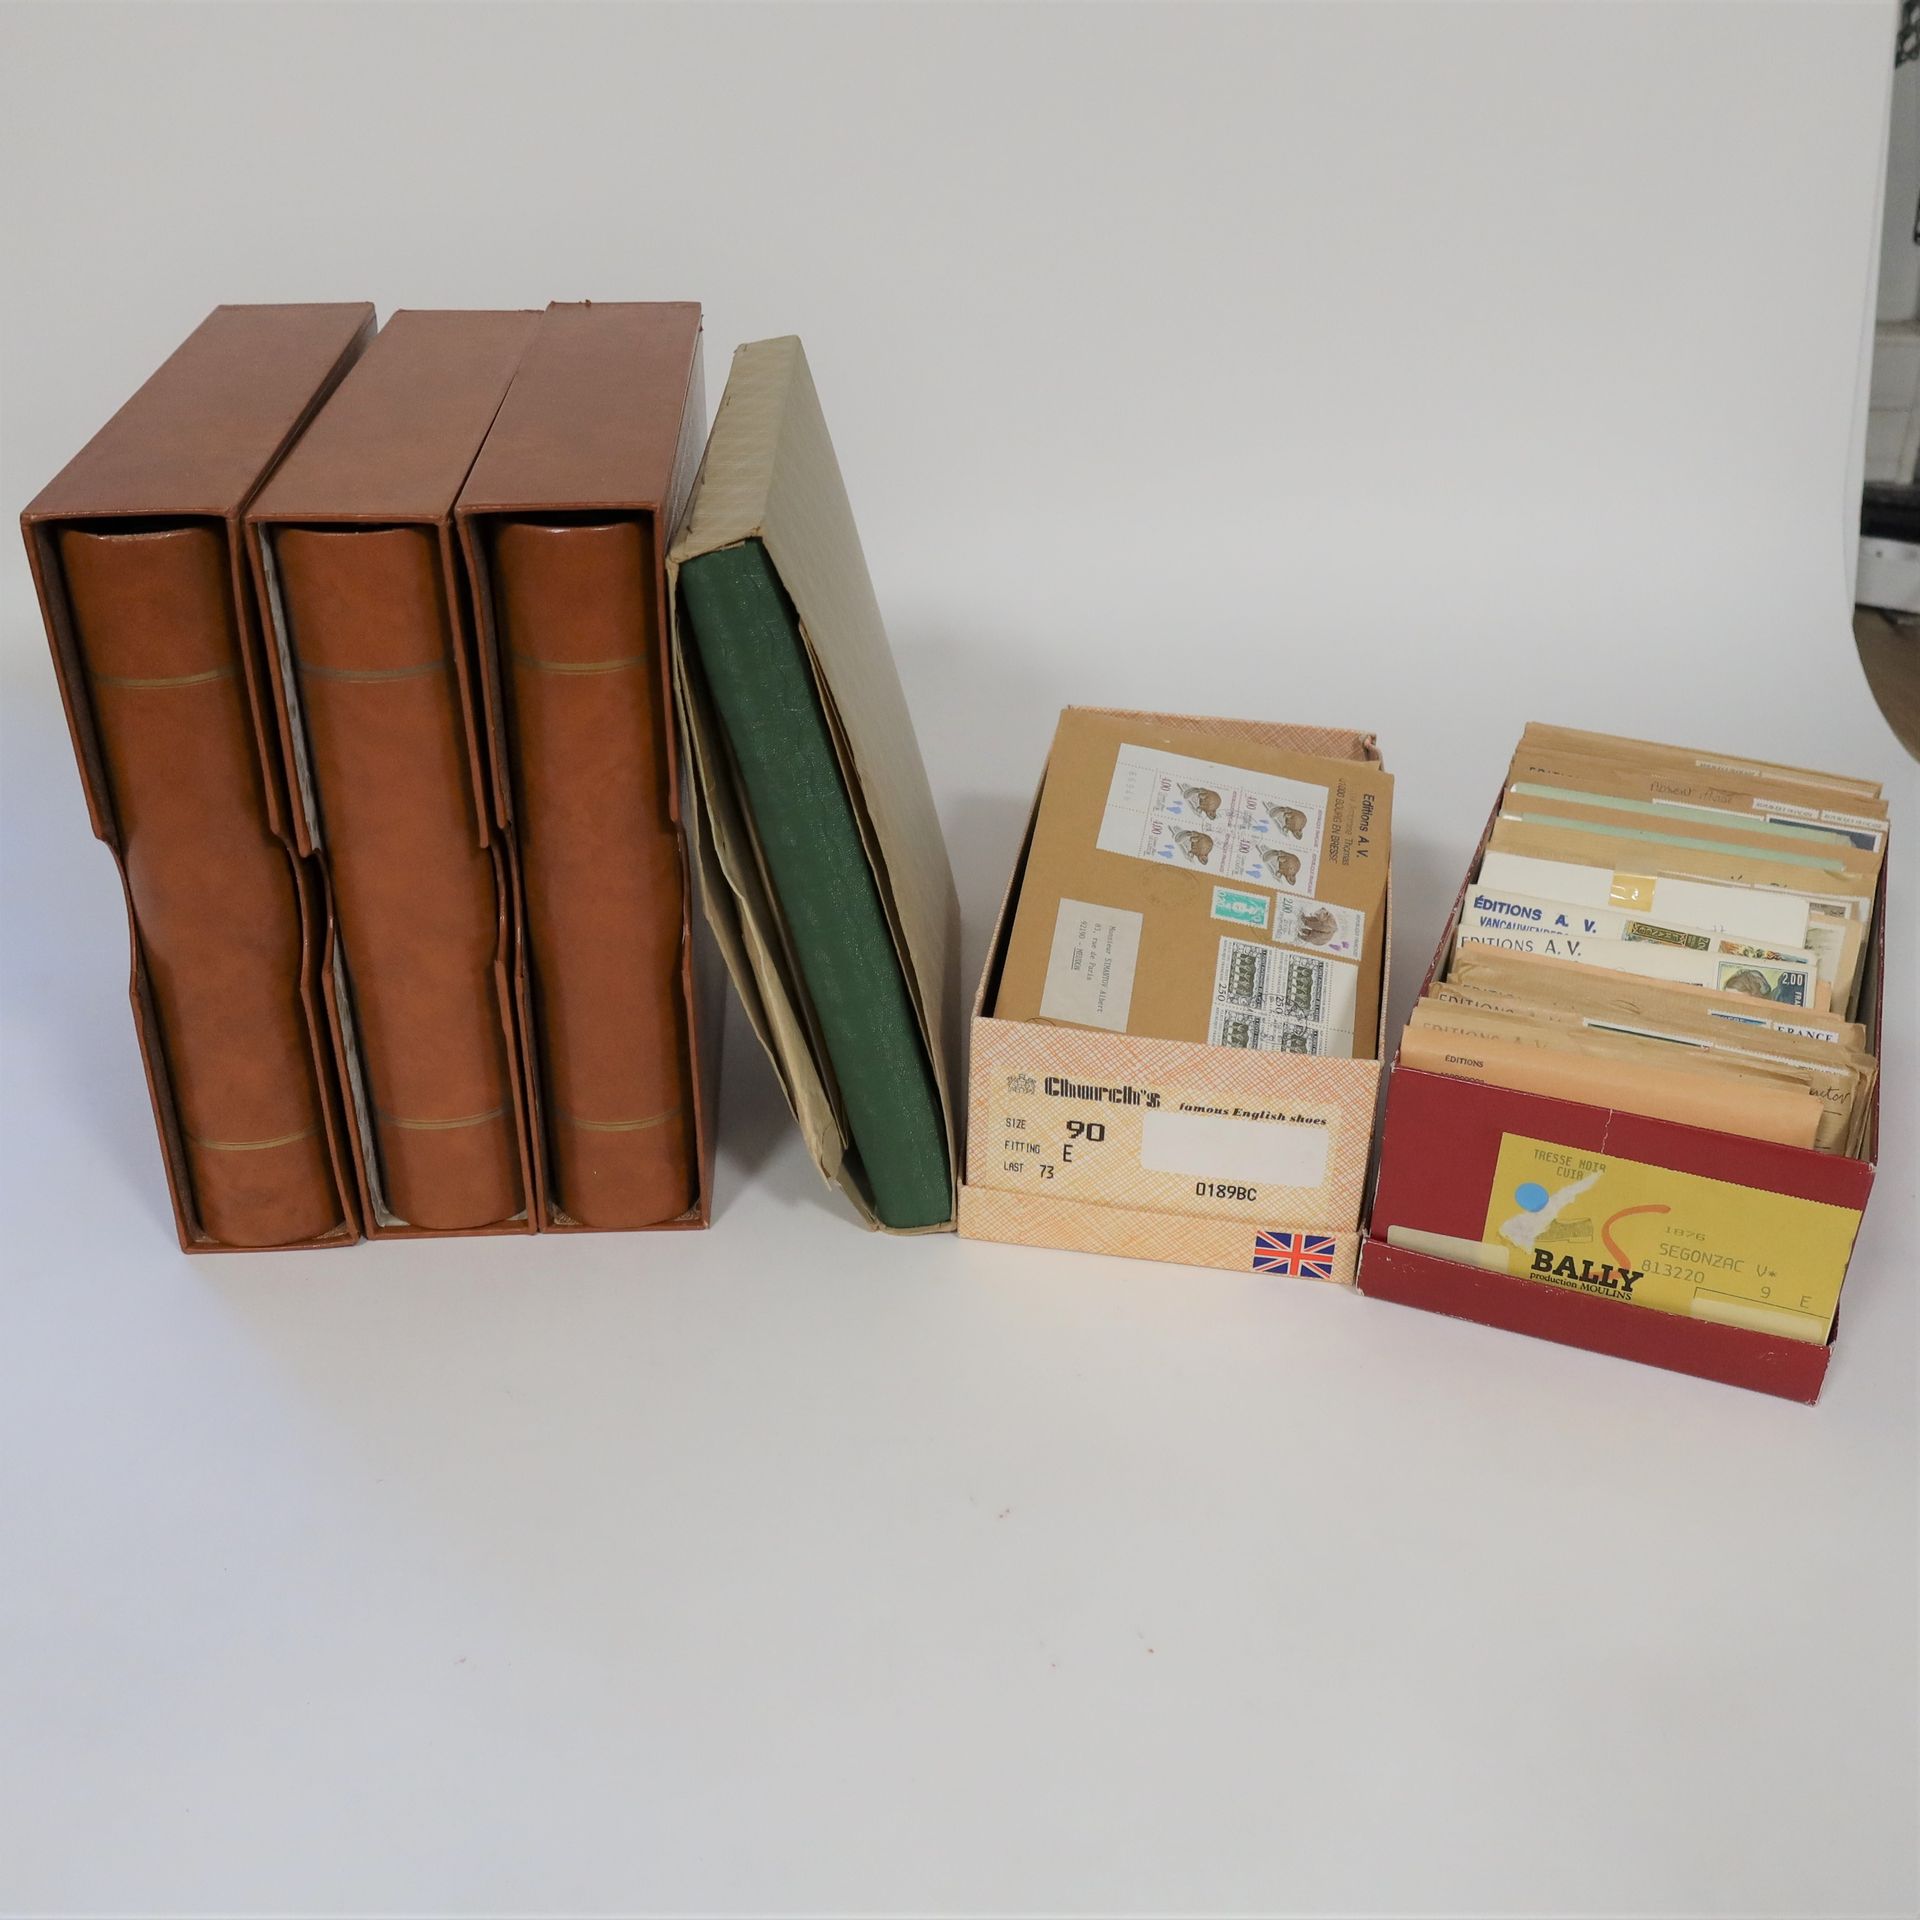 Null [中国]
一套由4本相册和两个鞋盒组成，只有主题花，薄荷**豪华邮票，从AV屋订购。时间从60年代初到90年代，包括文化大革命期间中国的4页。